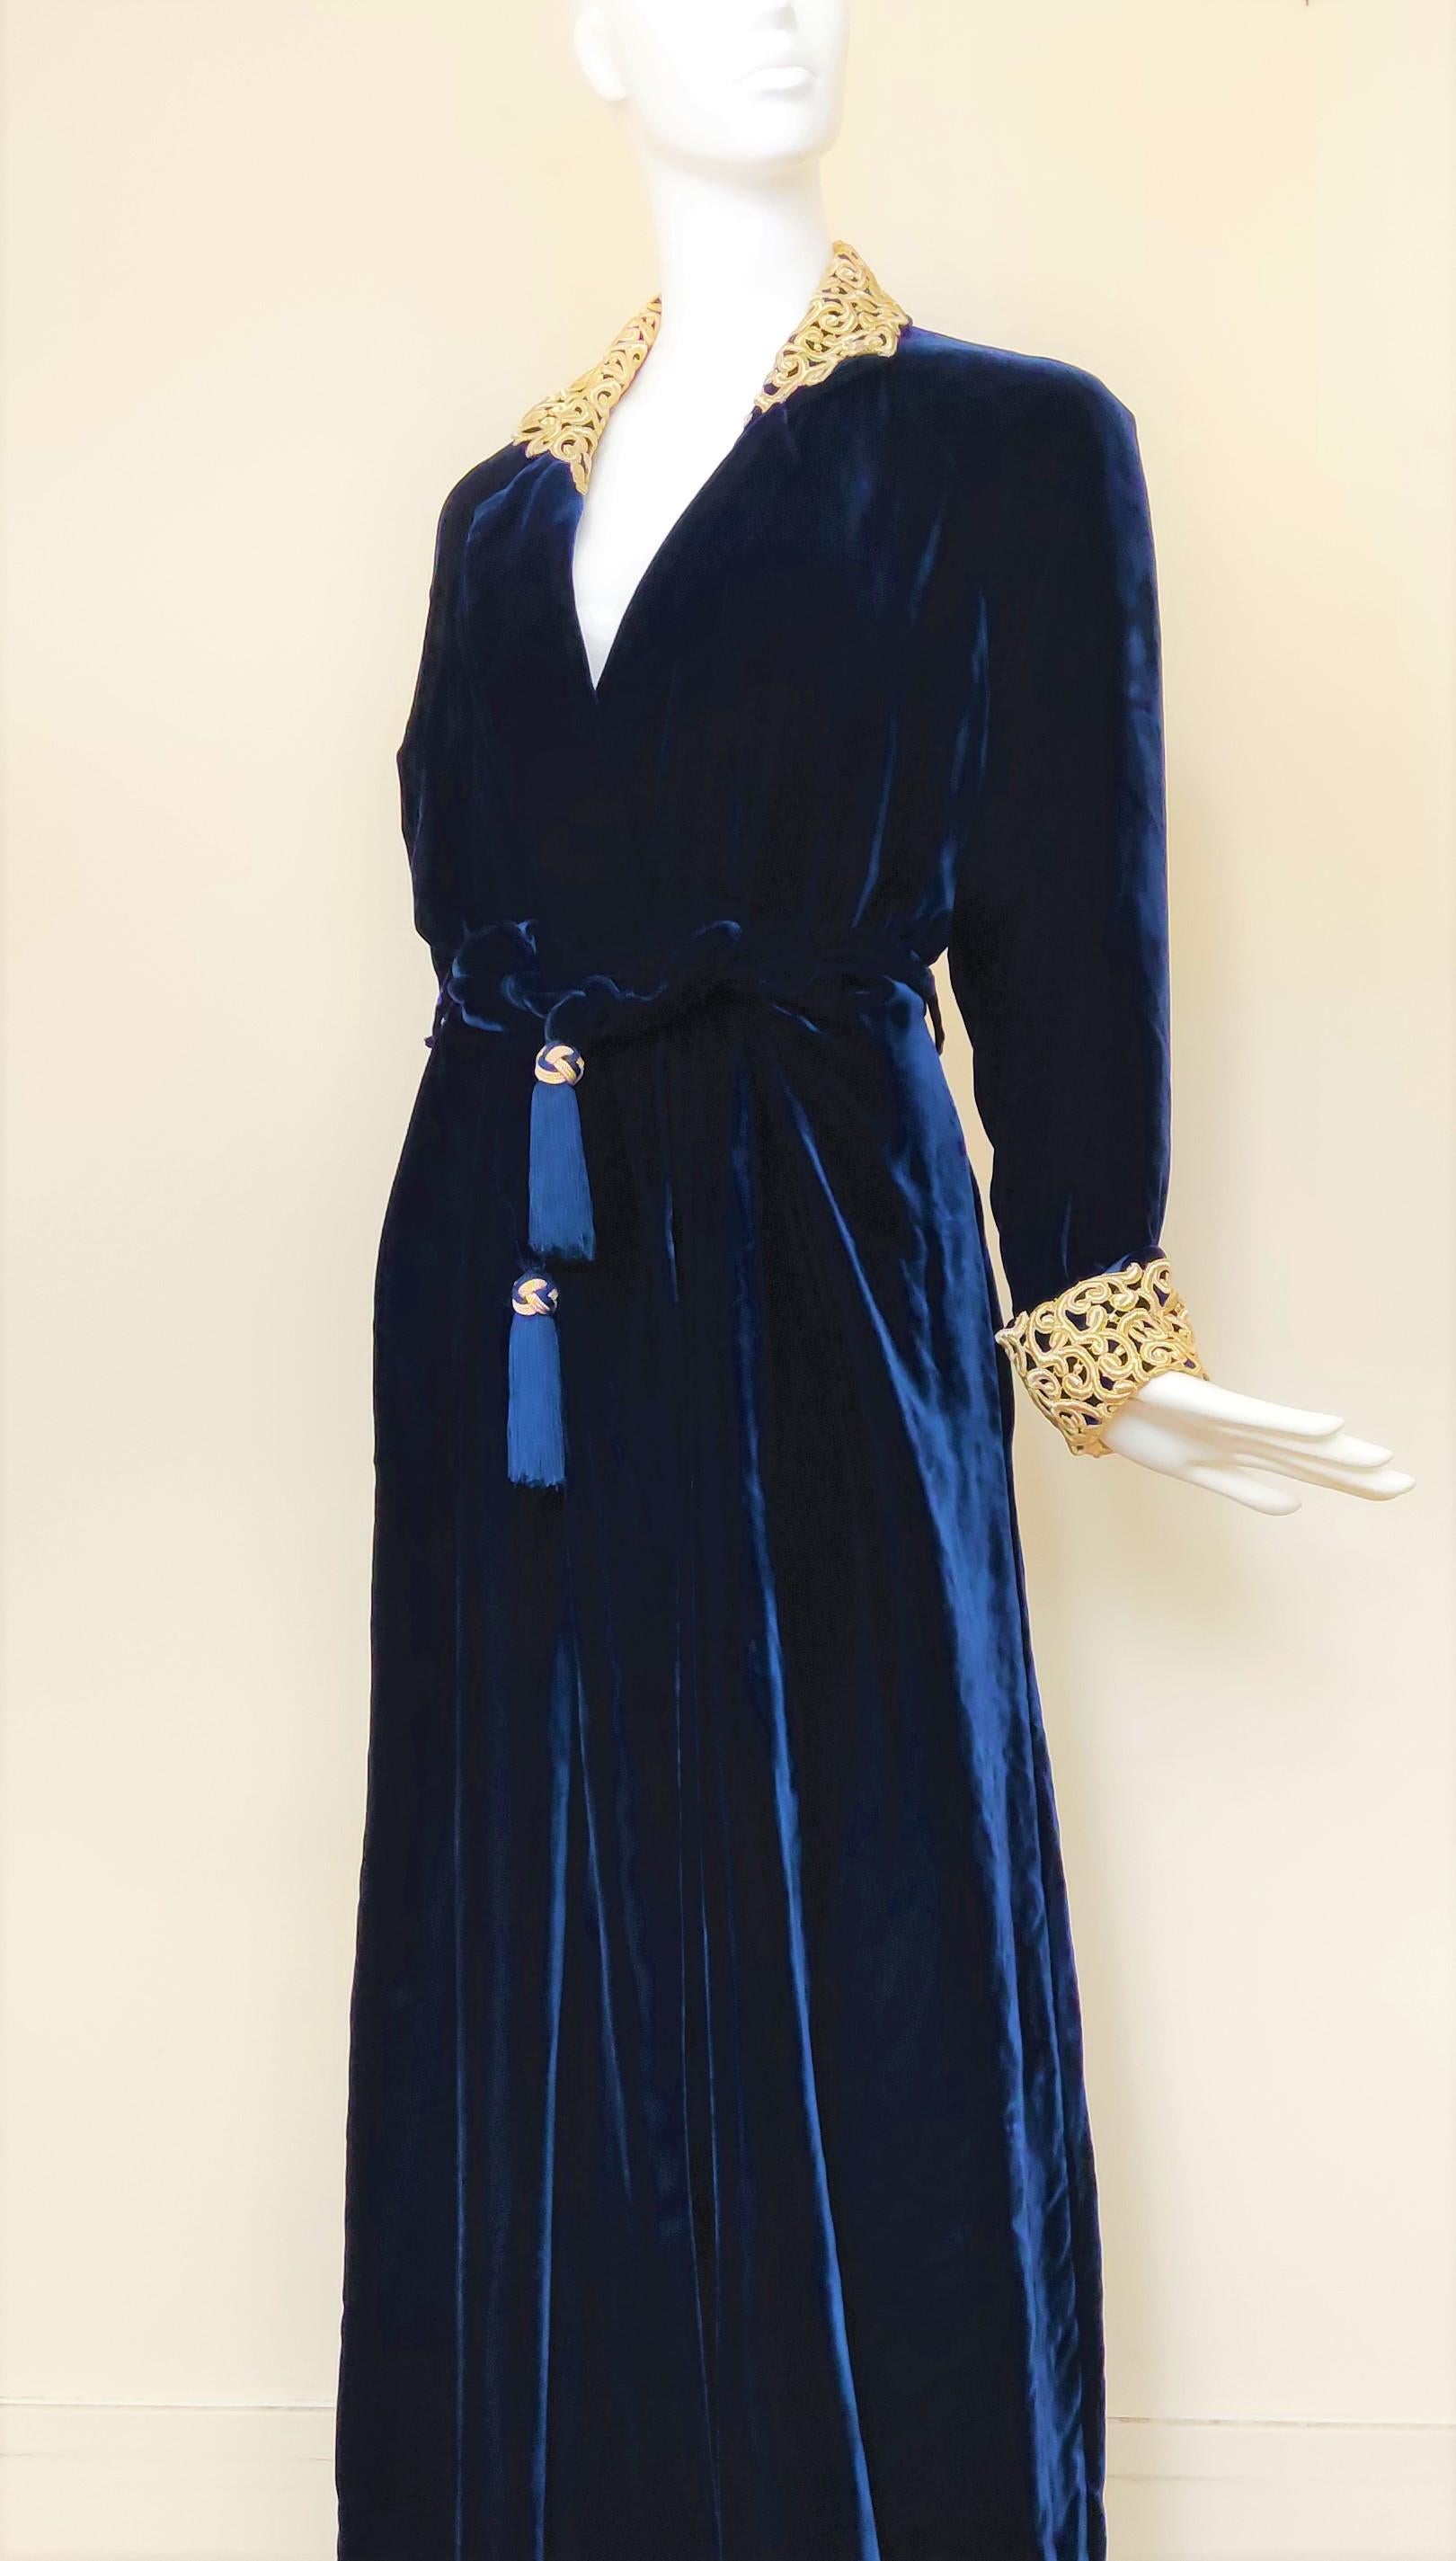 Abendkleid aus Samt von Christian Dior!
Wahrscheinlich aus den 60er Jahren!
Samtstoff mit Ornament am Kragen und an den Ärmeln.

Hervorragender Zustand.
Zusätzlicher Verschluss mit den inneren Kordeln. 

GRÖSSE
Einheitsgröße. Aber es passt am besten